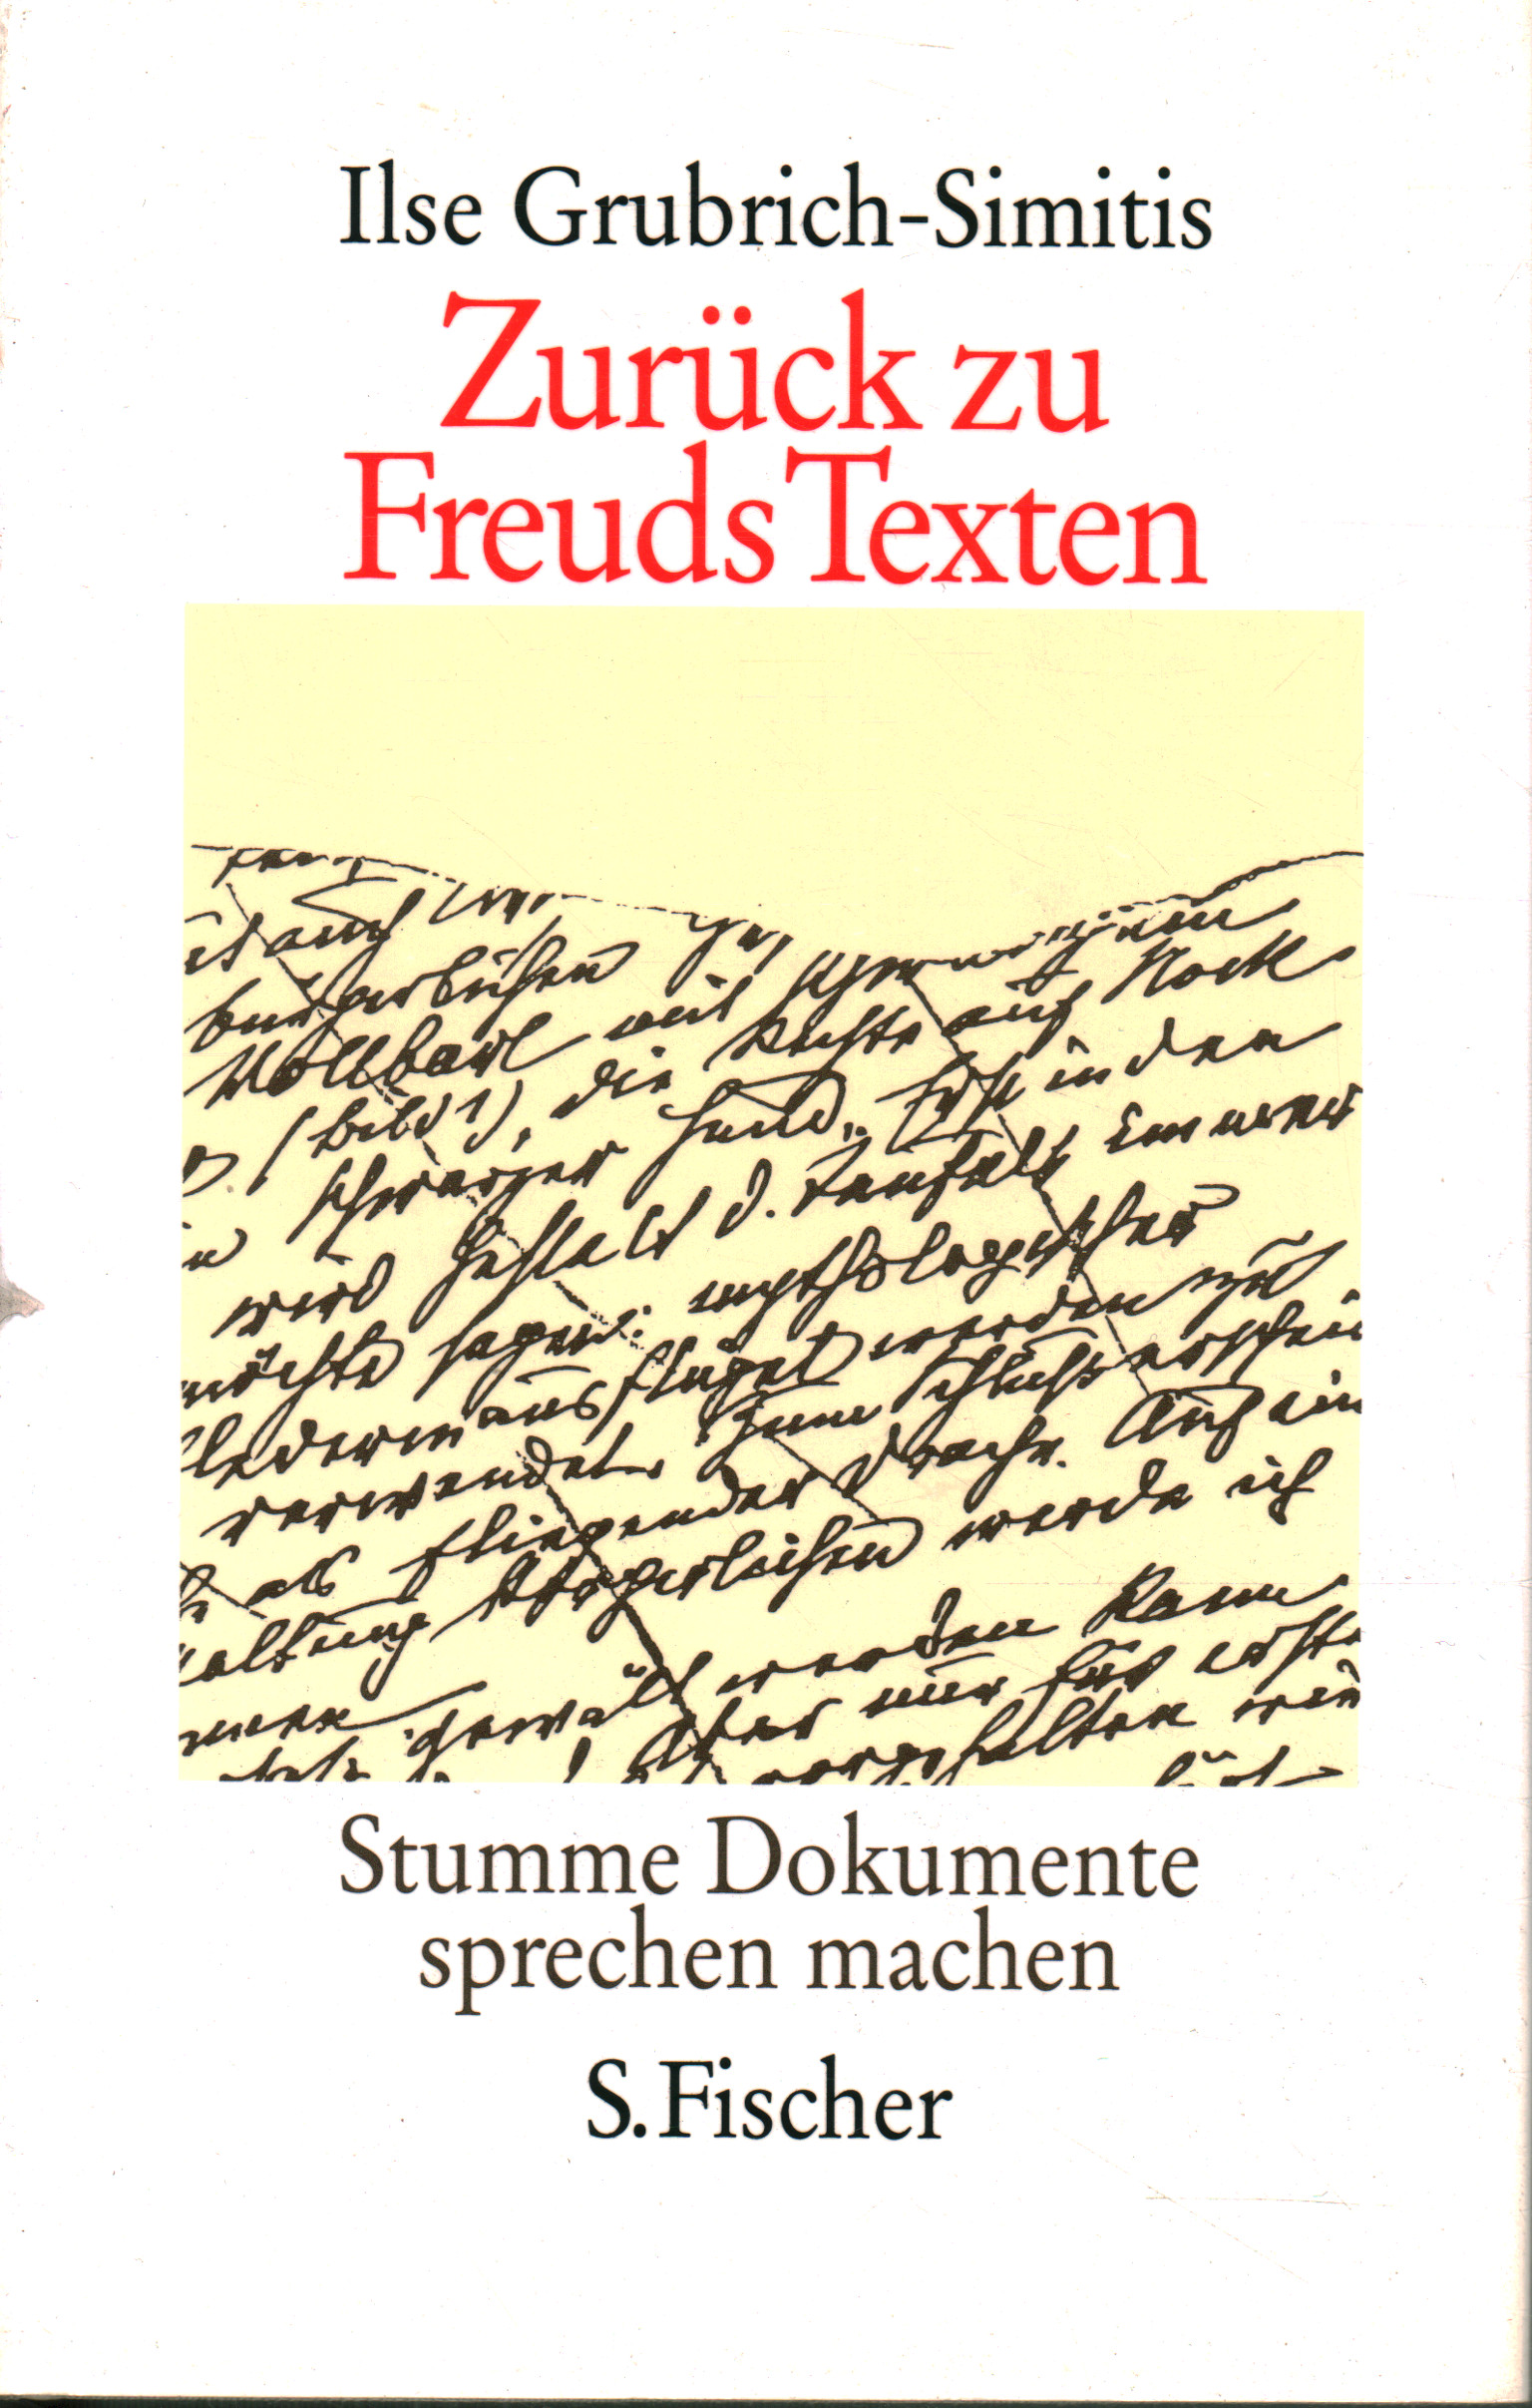 Zurück zu Freuds Texten, Ilse Grubrich-Simitis